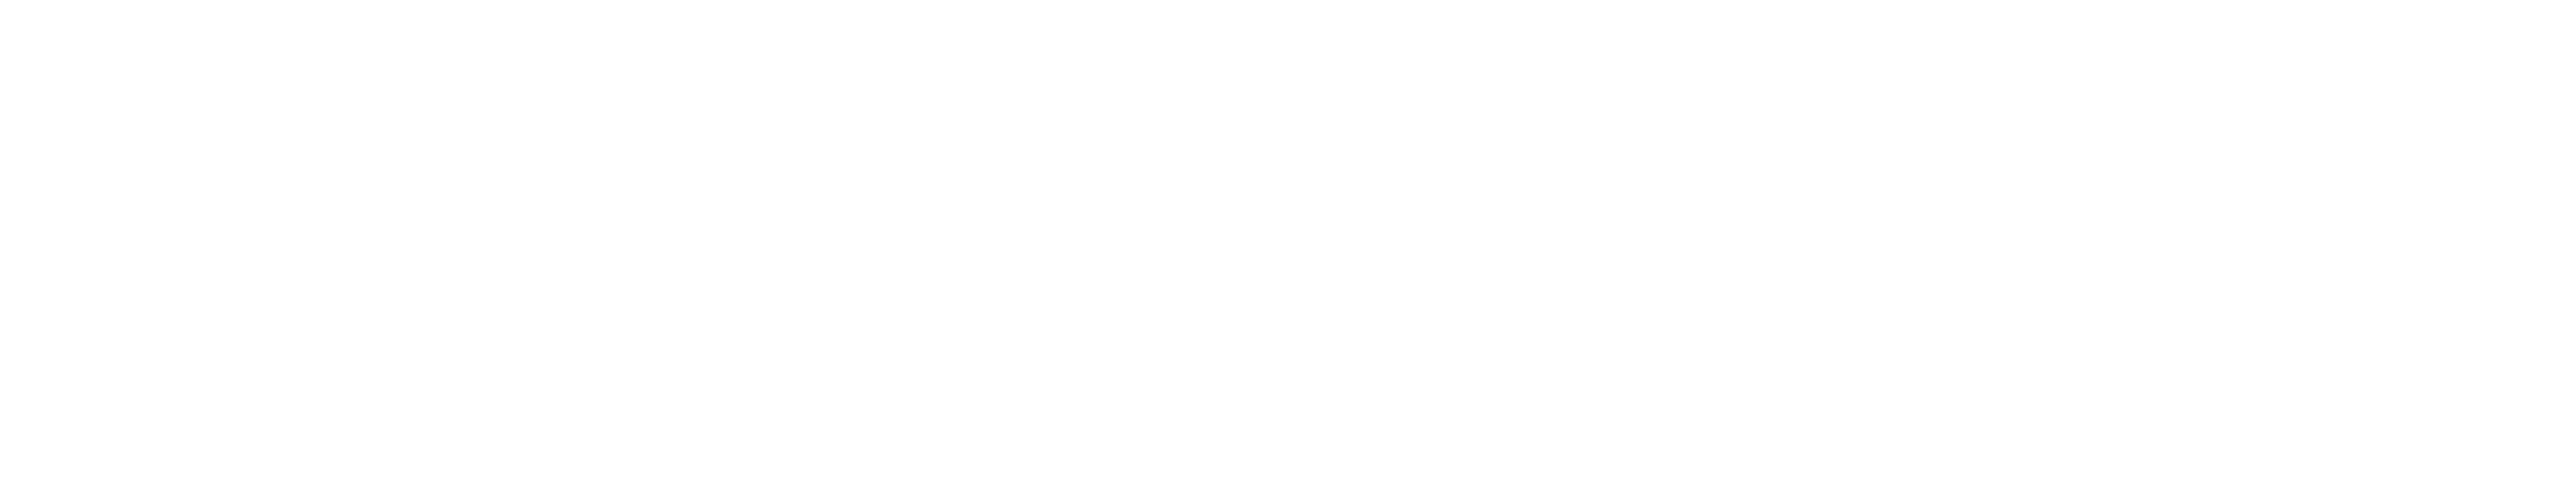 Logo Zevende-dags Adventisten Leiden